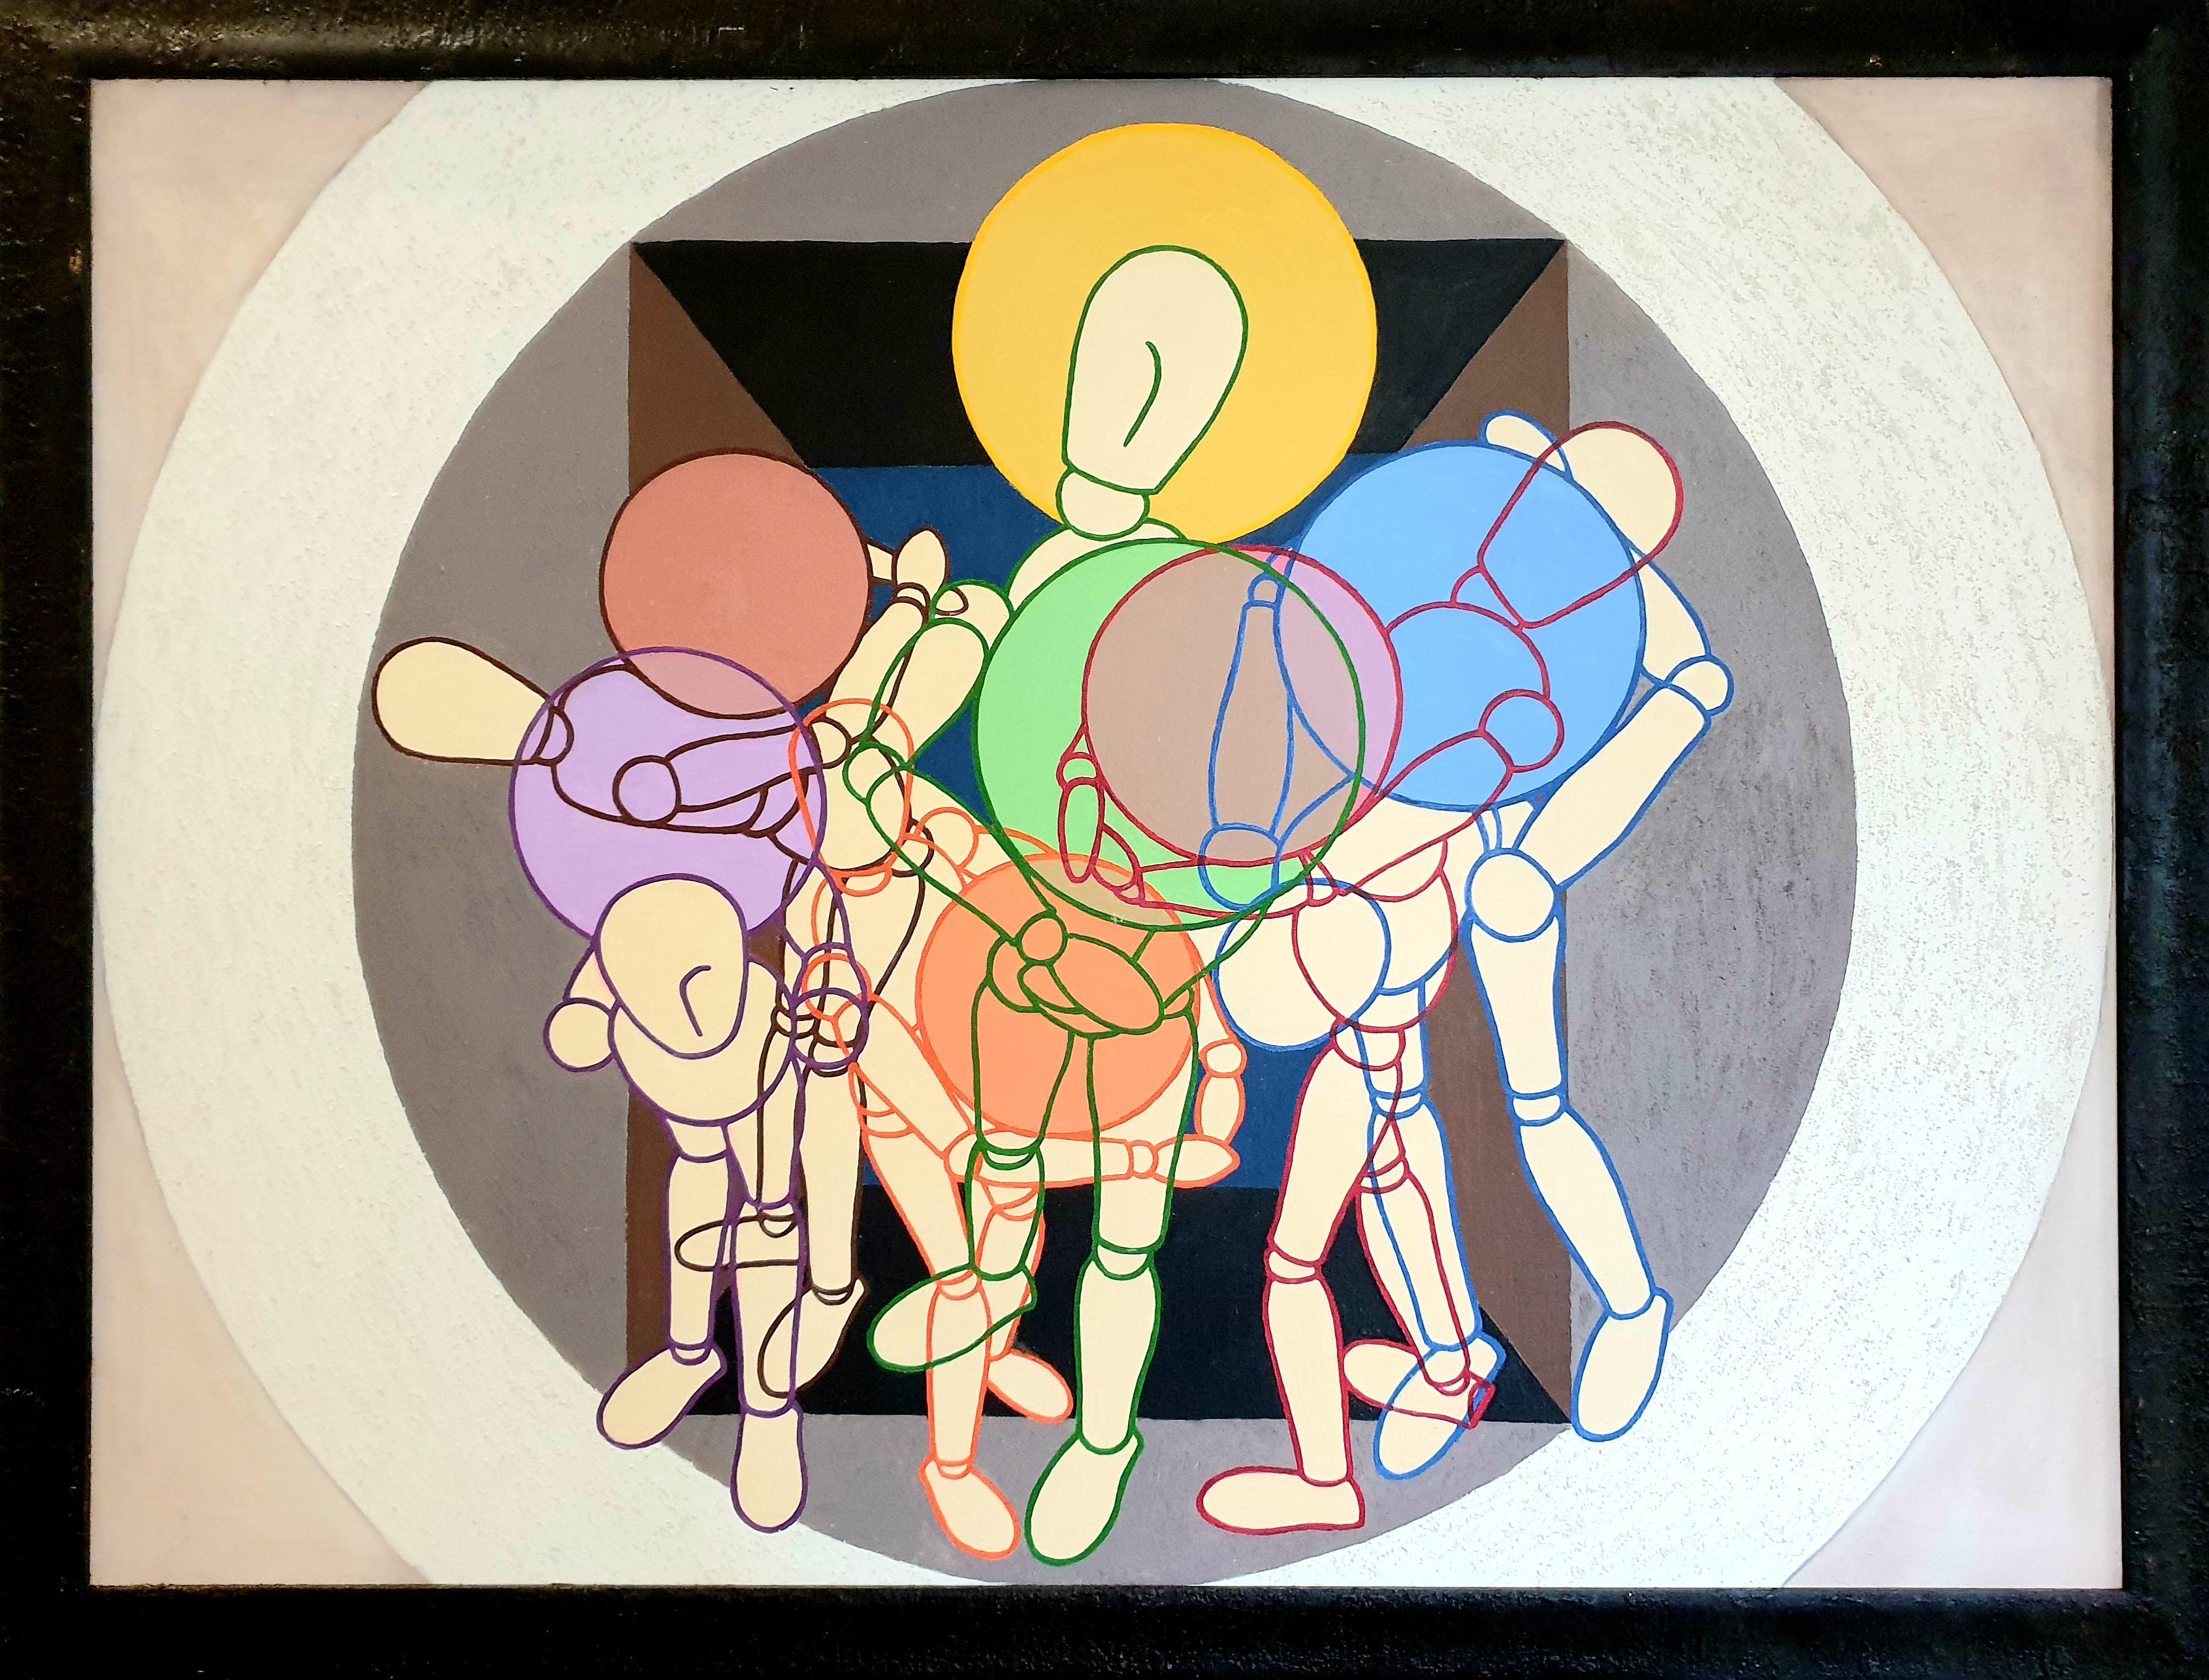 Grande huile géométrique abstraite sur toile représentant des personnages laïcs en train de jouer, par l'artiste britannique Derek Carruthers. Signé et daté 2004-5 au verso. Présenté dans un cadre noir texturé.

Une peinture merveilleusement